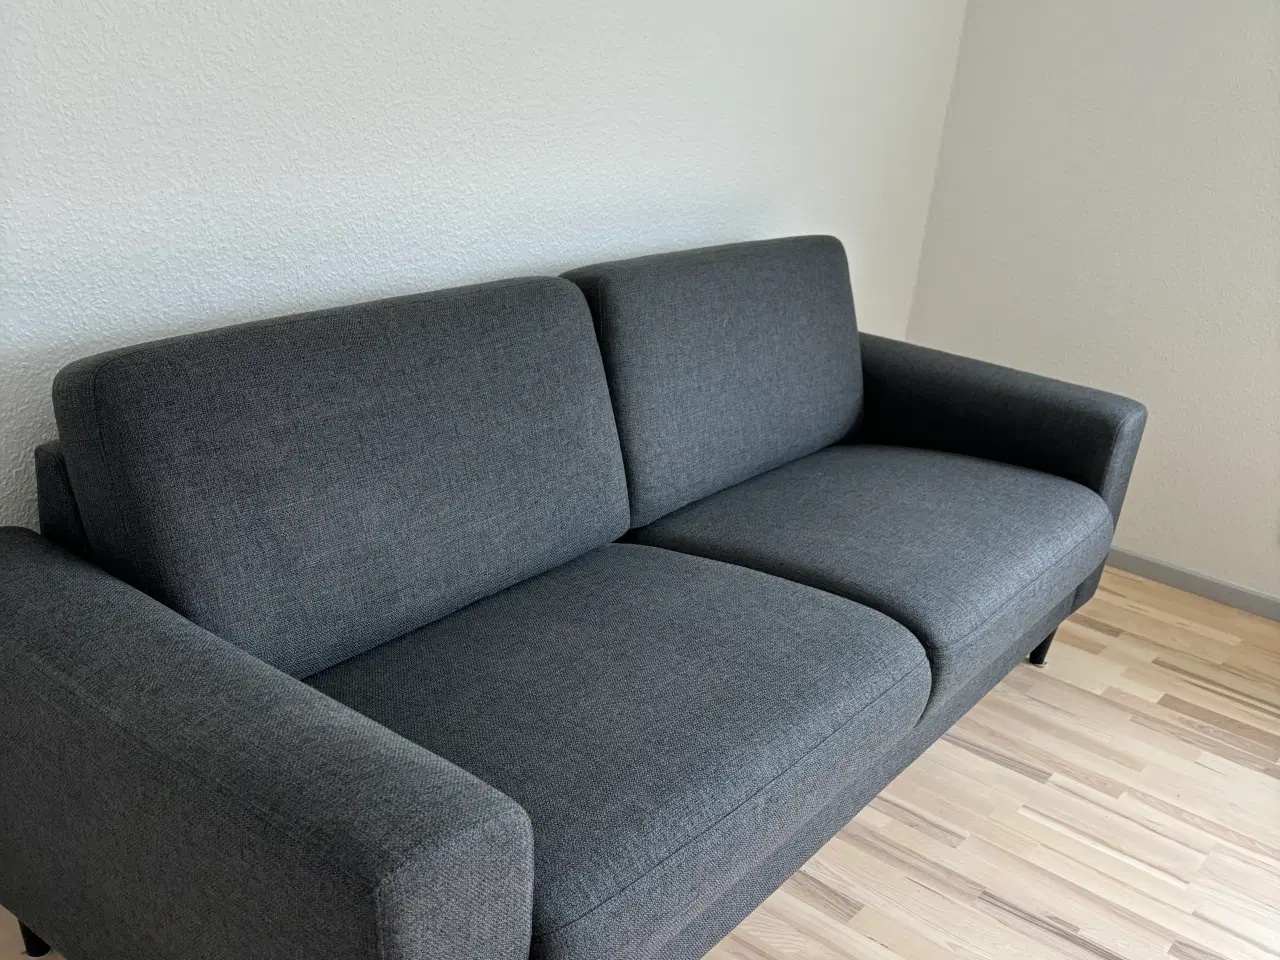 Billede 1 - 1 år gammel sofa sælges. Befinder sig i Gråsten 